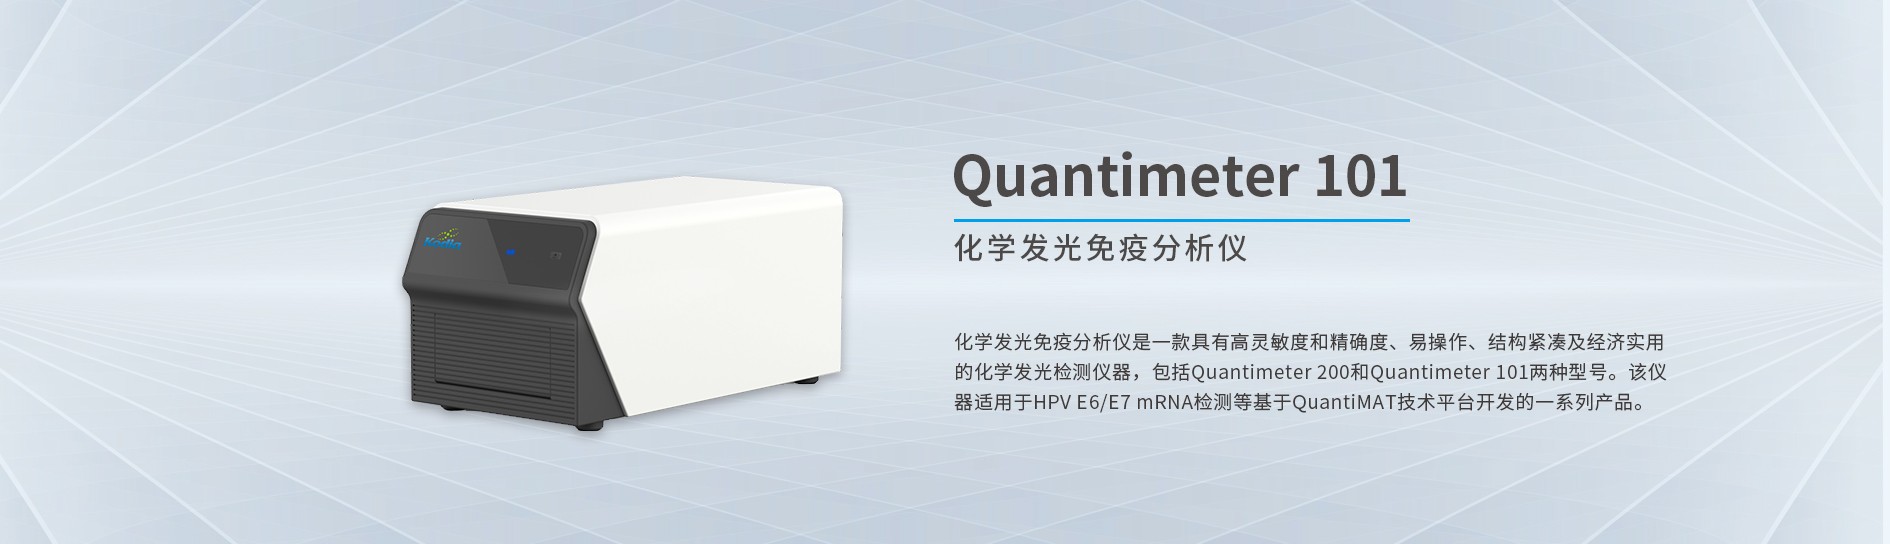 化学发光免疫分析仪Quantimeter 101